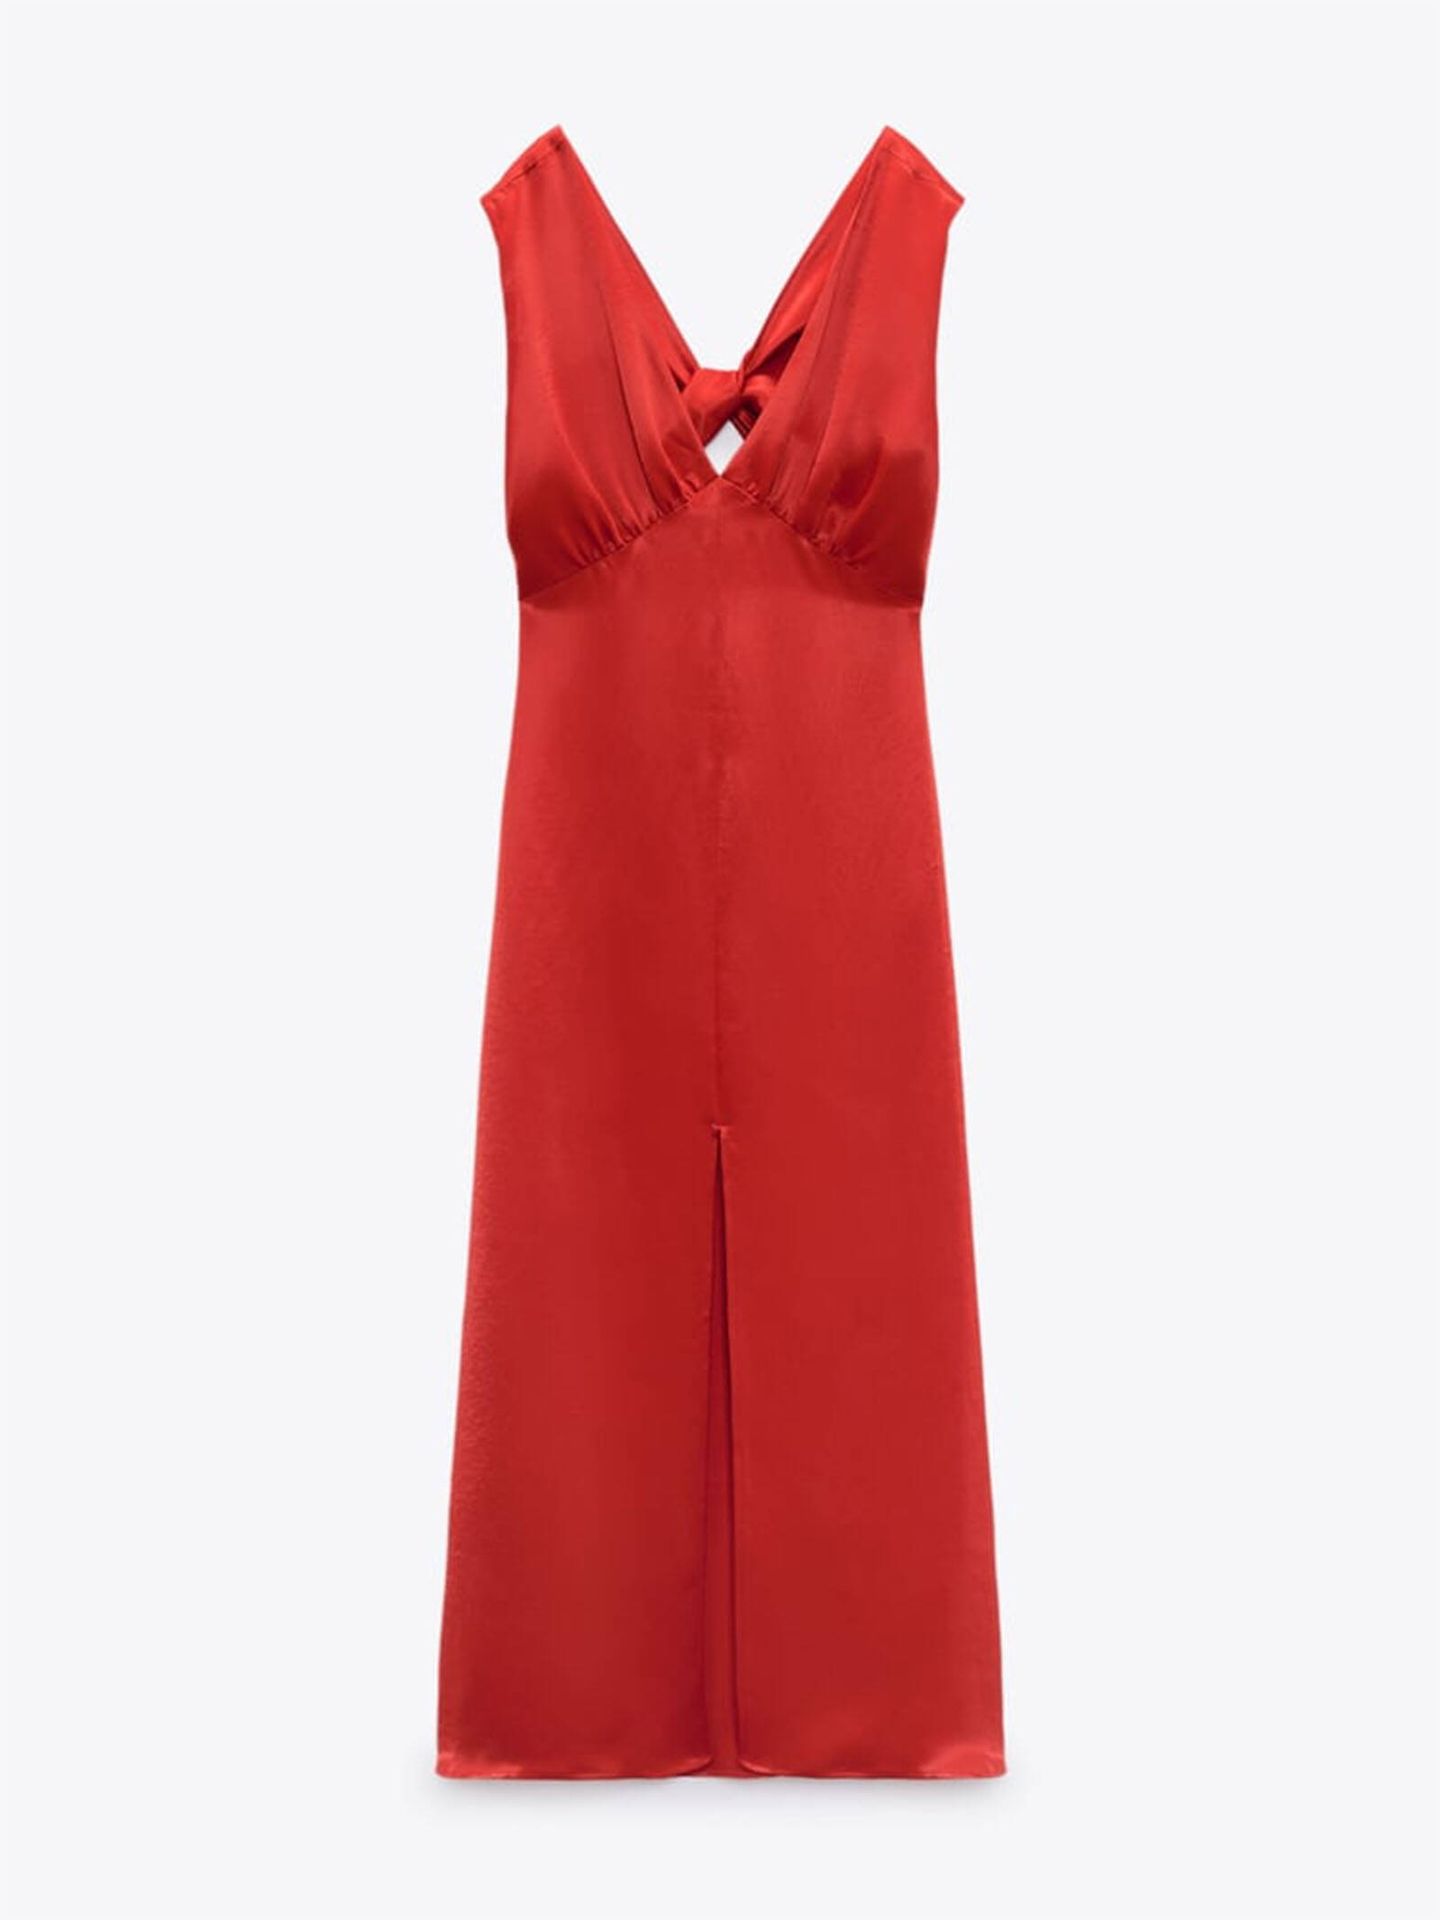 Un vestido rojo similar al de Isabel Díaz Ayuso. (Zara/Cortesía)